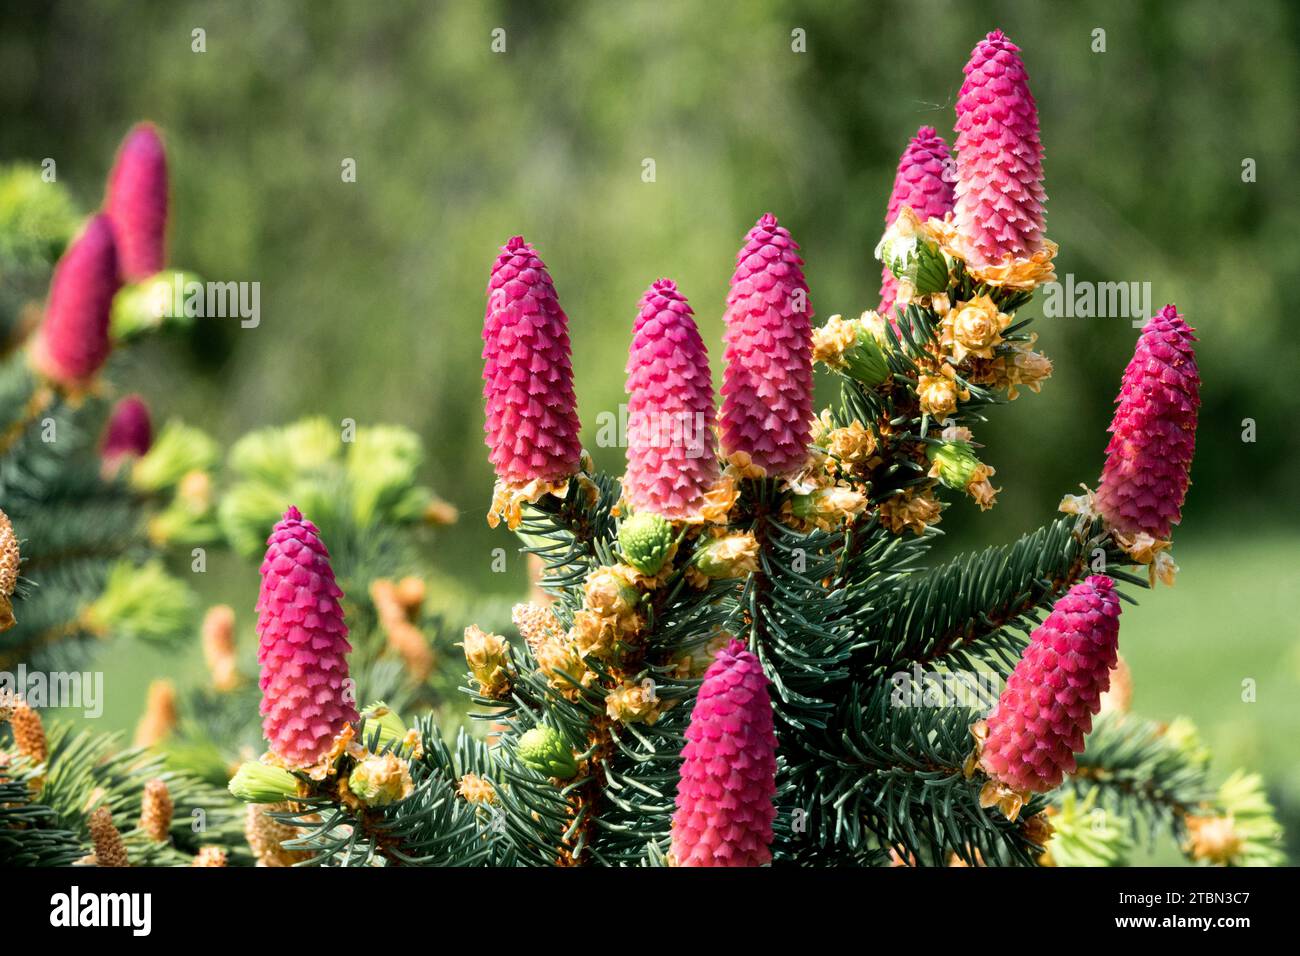 Norway spruce cones in spring Picea cones Stock Photo